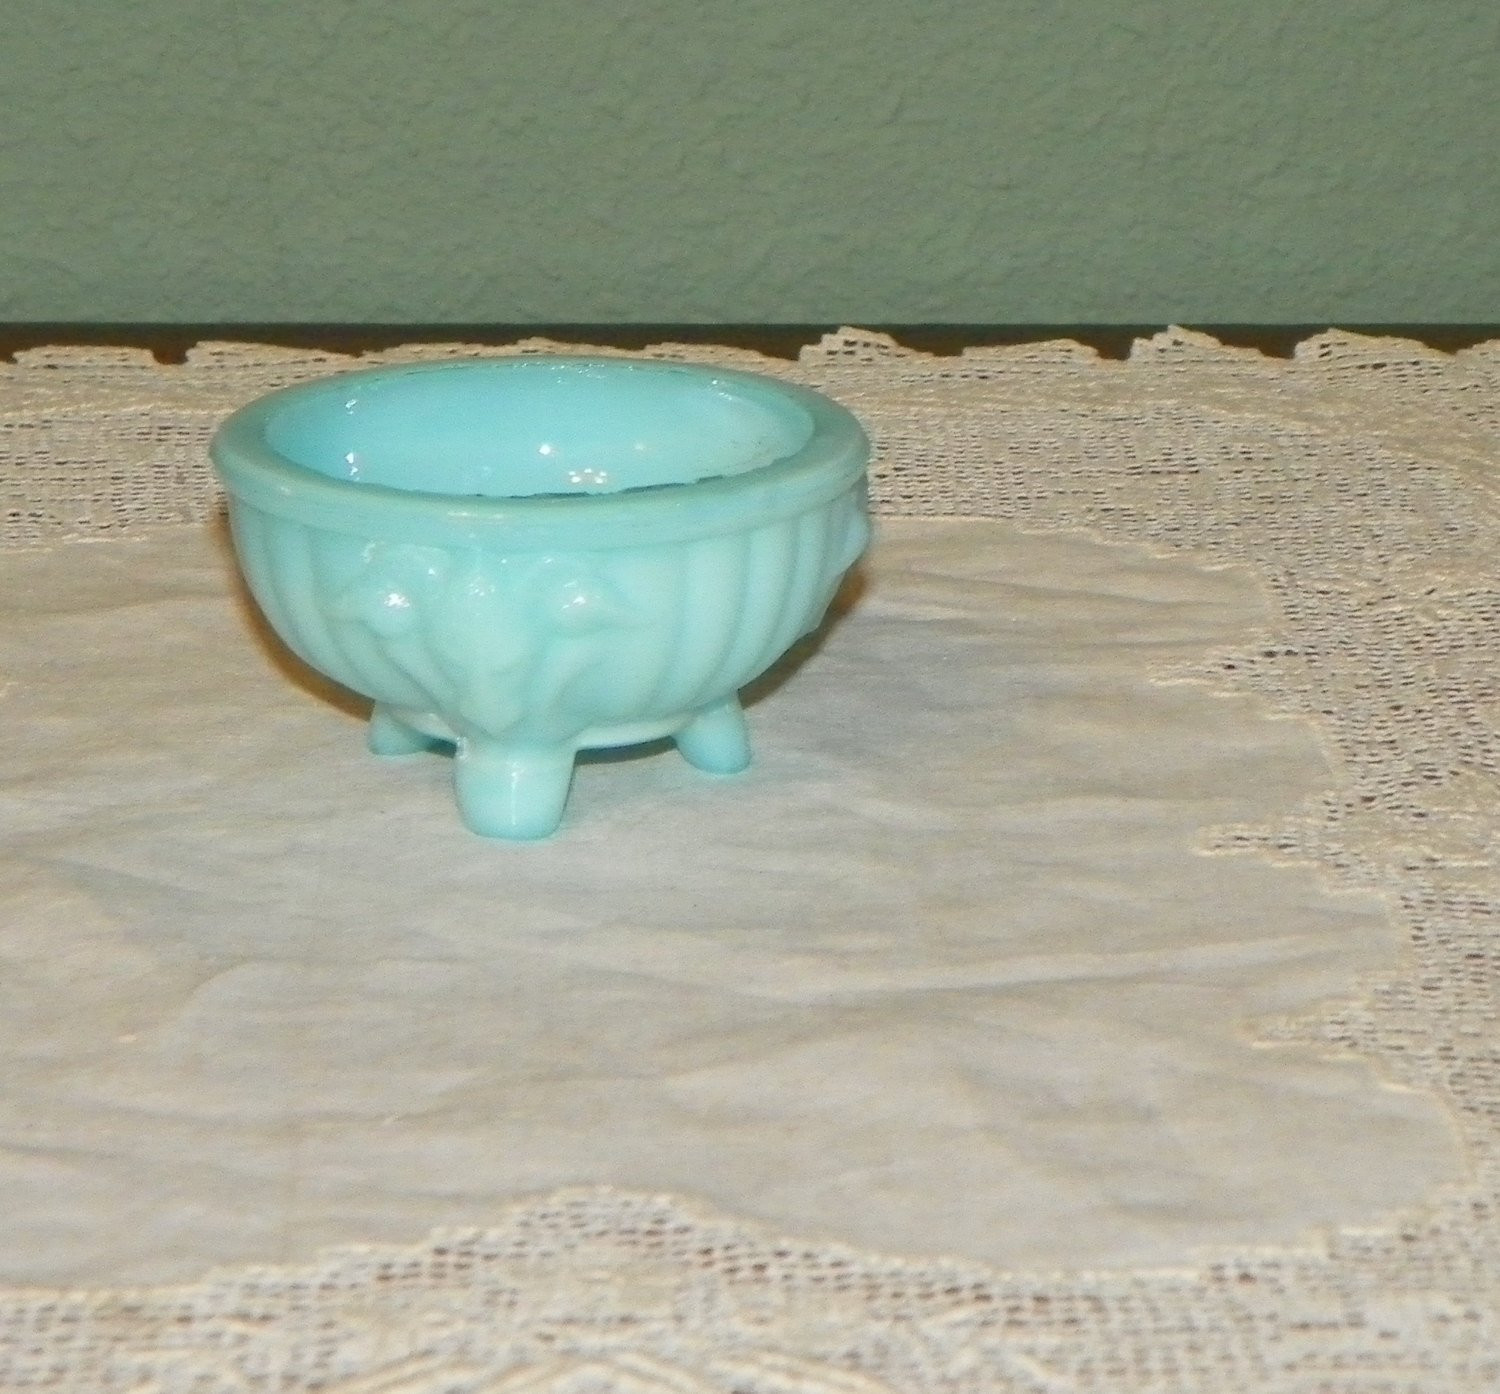 12 attractive Blue Opalescent Hobnail Vase 2024 free download blue opalescent hobnail vase of antique portieux vallerysthal salt dip holder sellar seller pv regarding dc29fc294c28ezoom